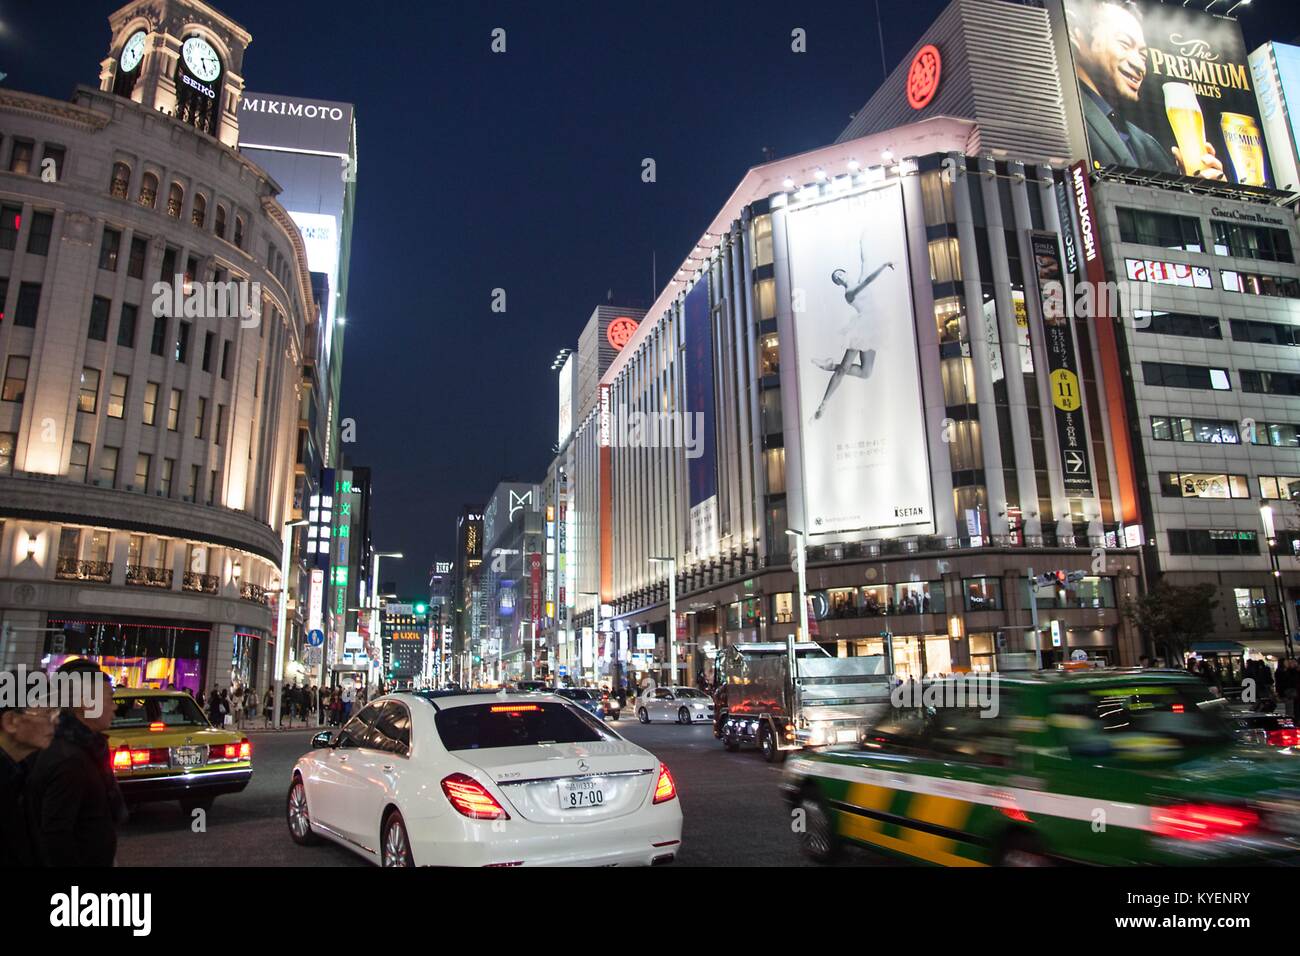 Voitures passent à travers une intersection achalandée que les piétons se préparer à traverser, avec des boutiques et des panneaux lumineux, visibles dans la nuit dans la station Ginza, connue pour ses restaurants et bars plus âgés, dans le quartier de Chiyoda à Tokyo, Japon, Novembre, 2017. () Banque D'Images